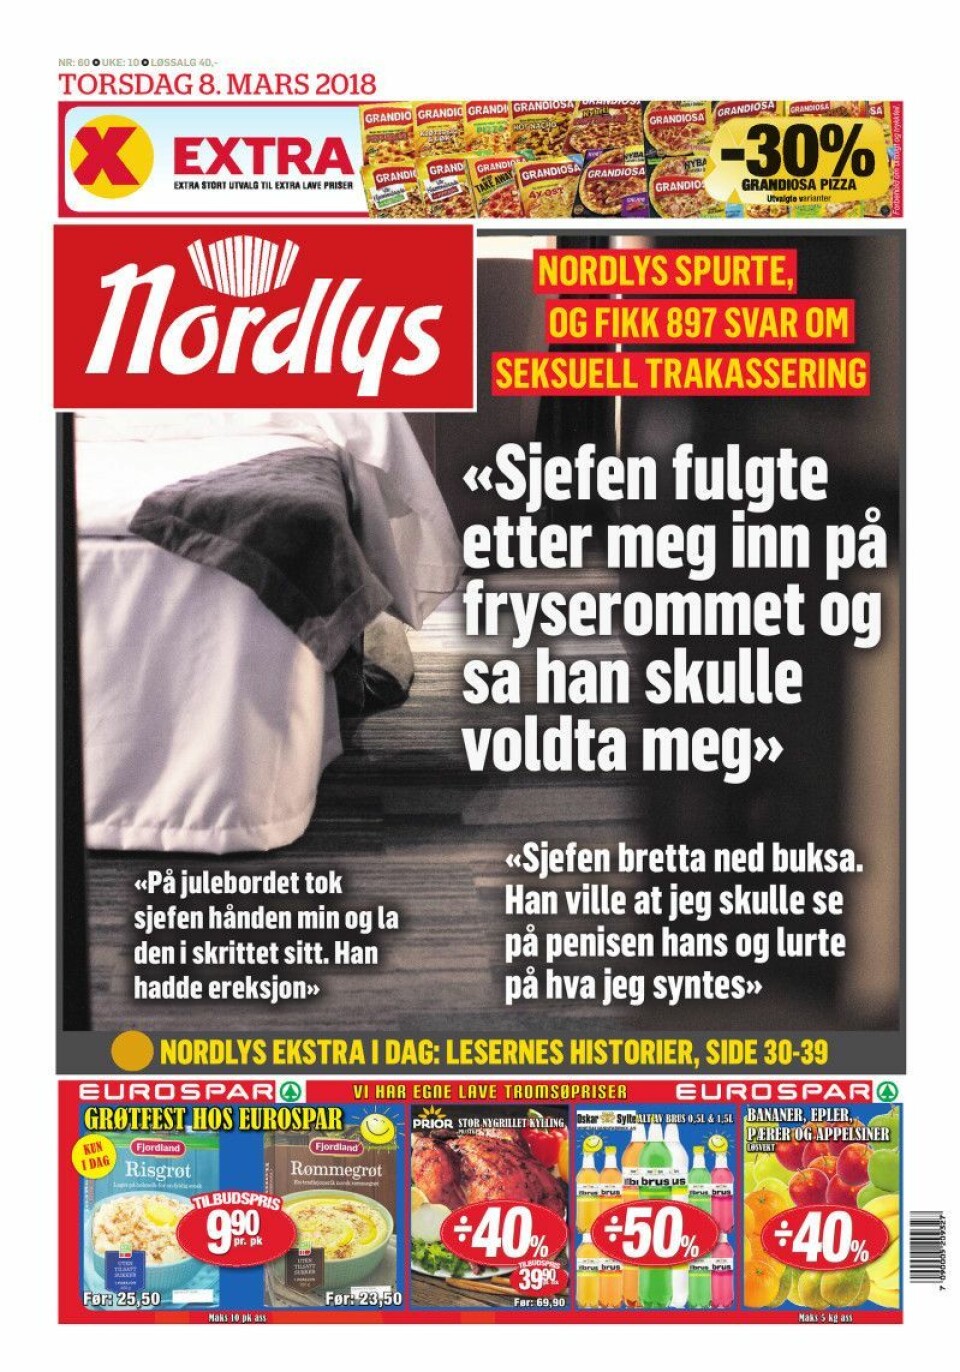 Nordlys-forsiden 8. mars 2018.